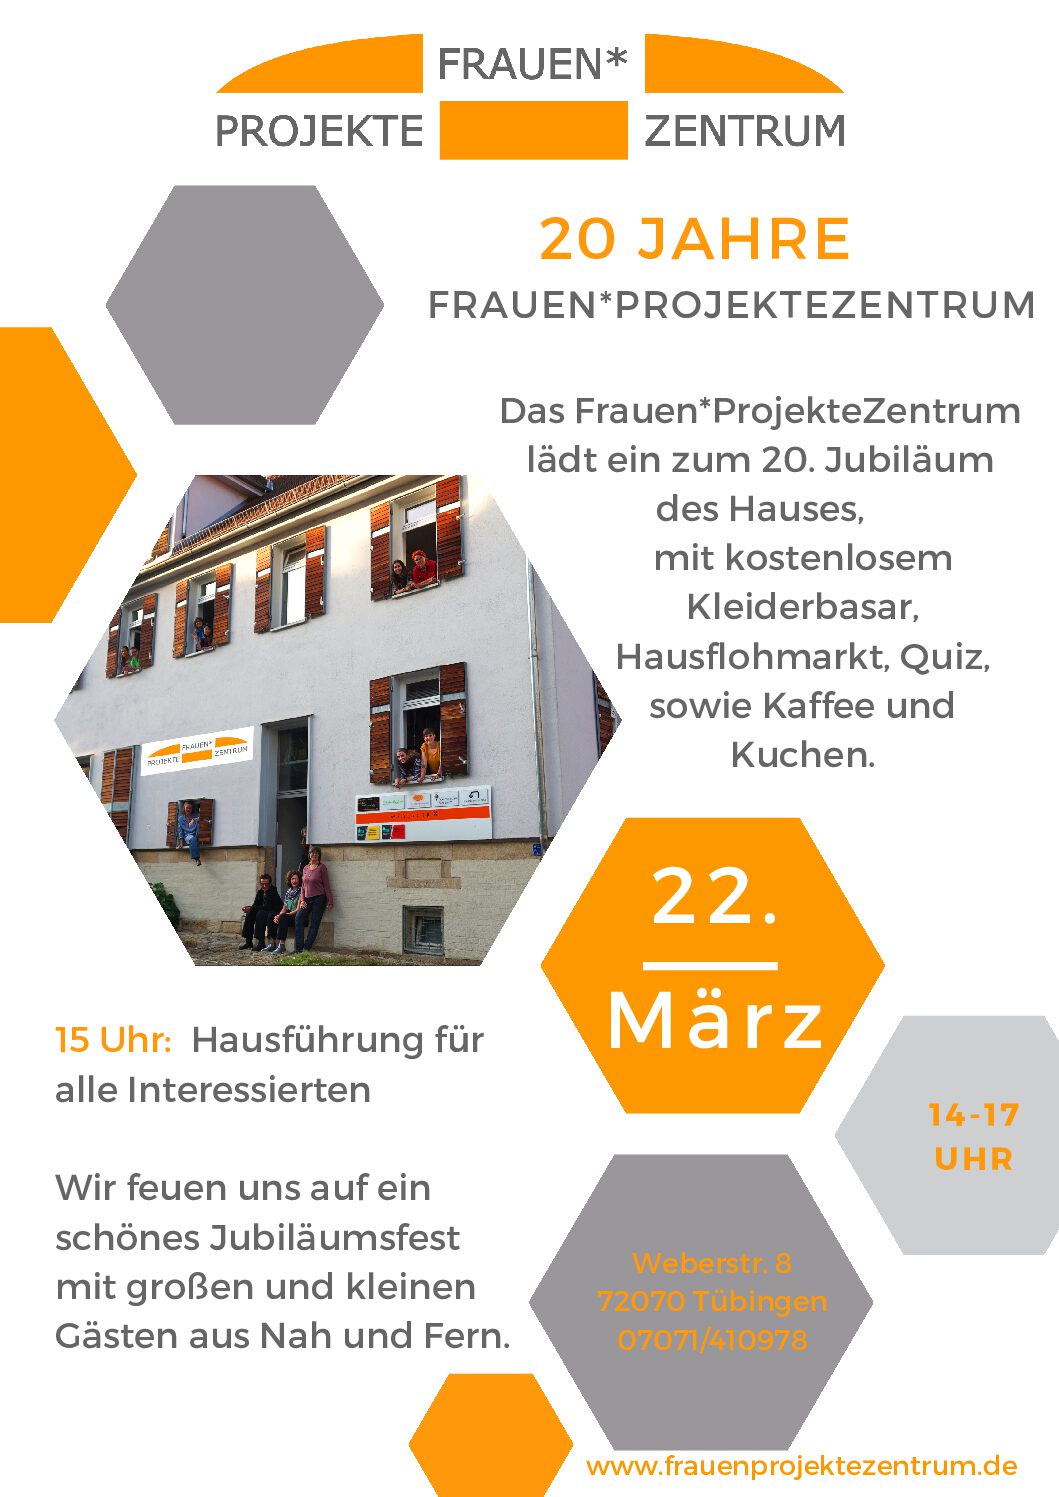 20 Jahre Frauen*ProjekteZentrum in Tübingen – Jubiläumsfeier mit Flohmarkt